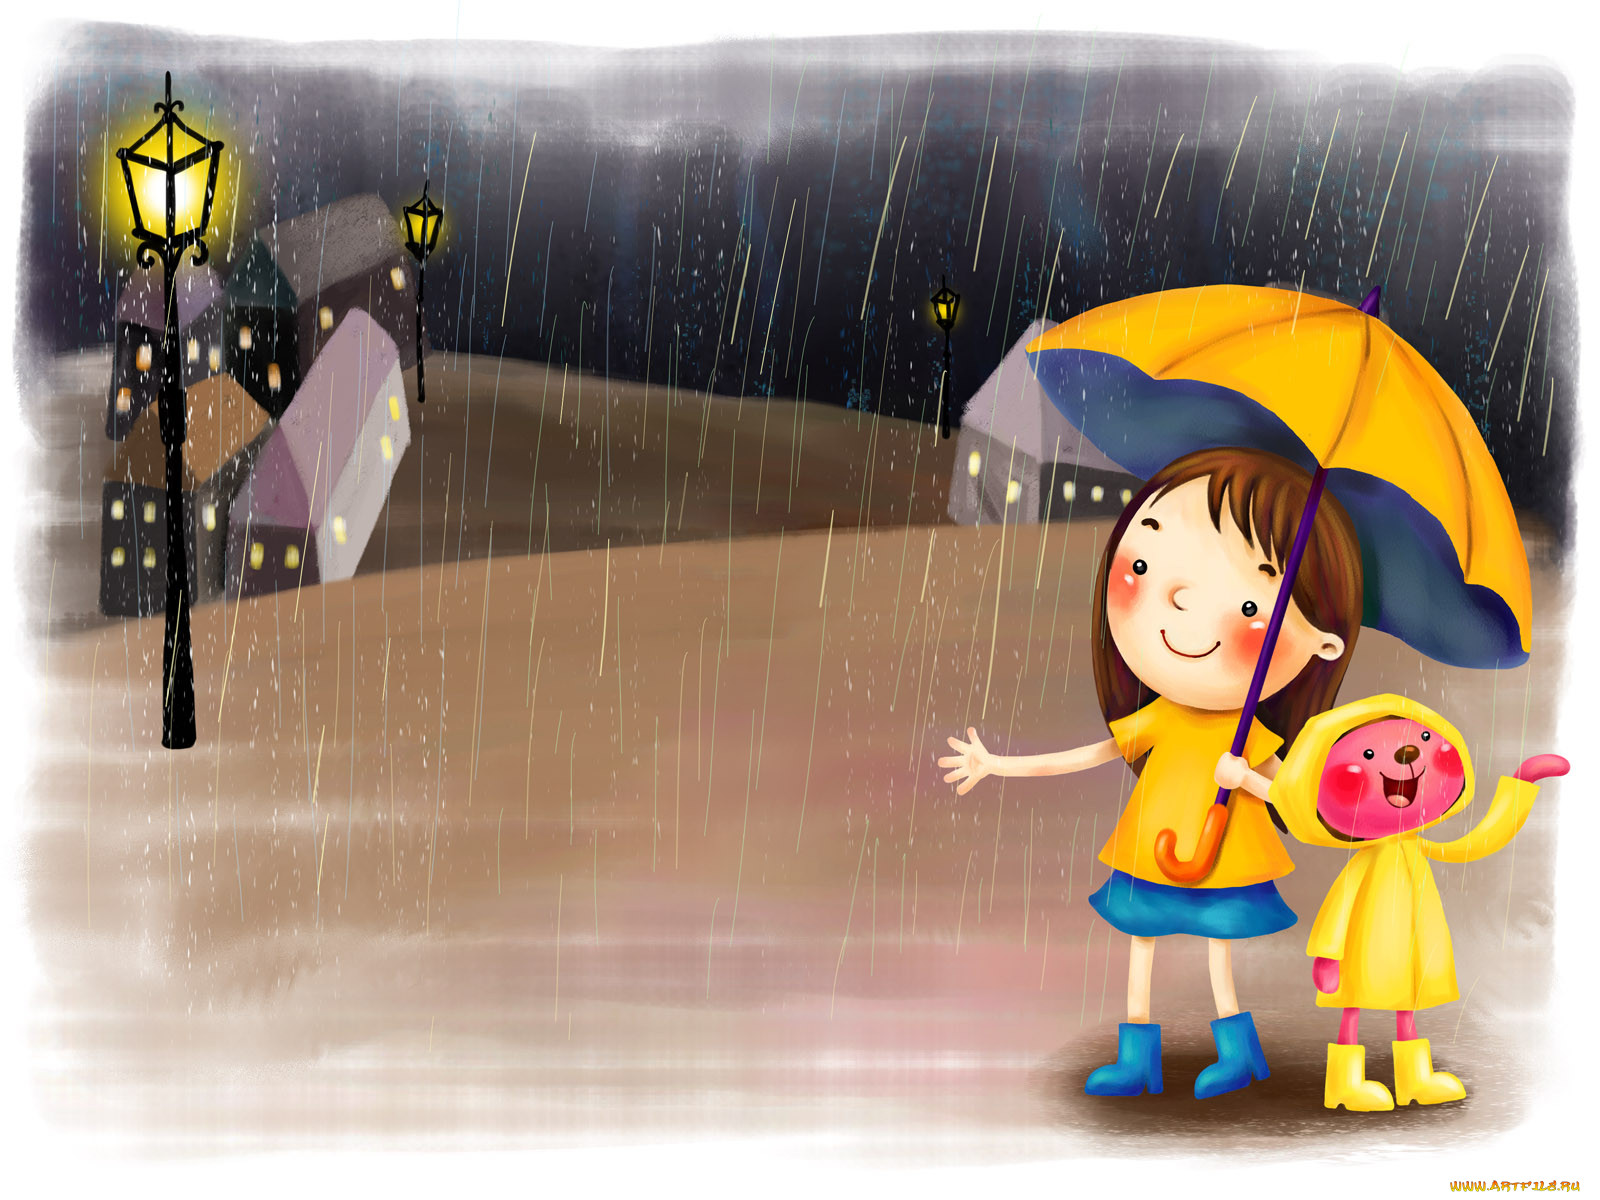 Песня ненастье счастье. День прогвлов под Дождкм. Дети дождя. Дождливый день. Дождь рисунок.